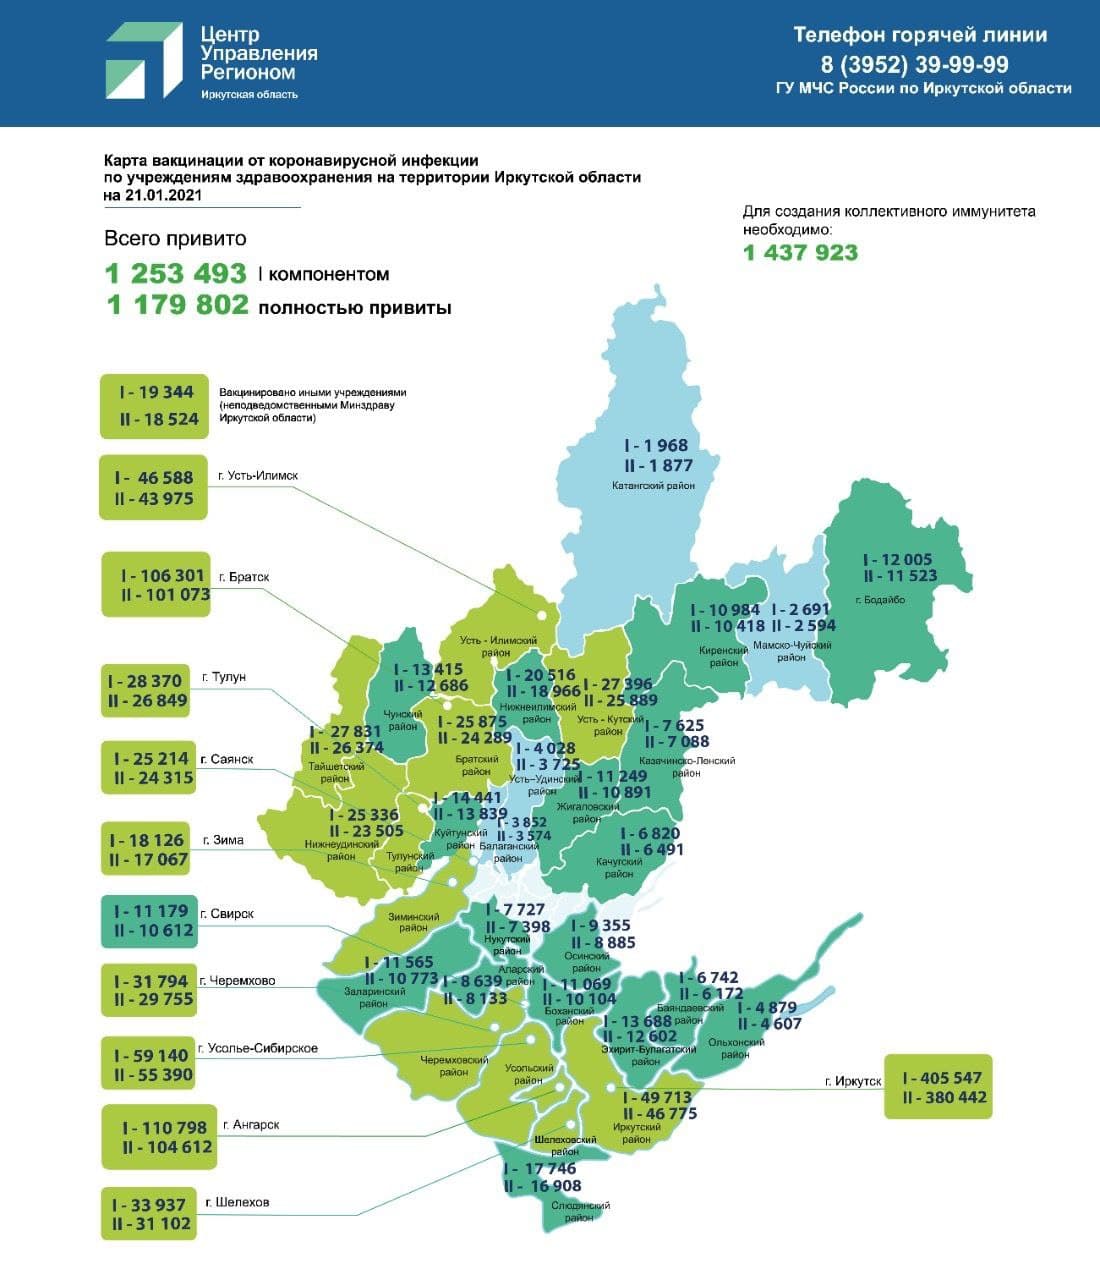 Карта вакцинации от коронавирусной инфекции и распространения COVID-19 на территории Иркутской области